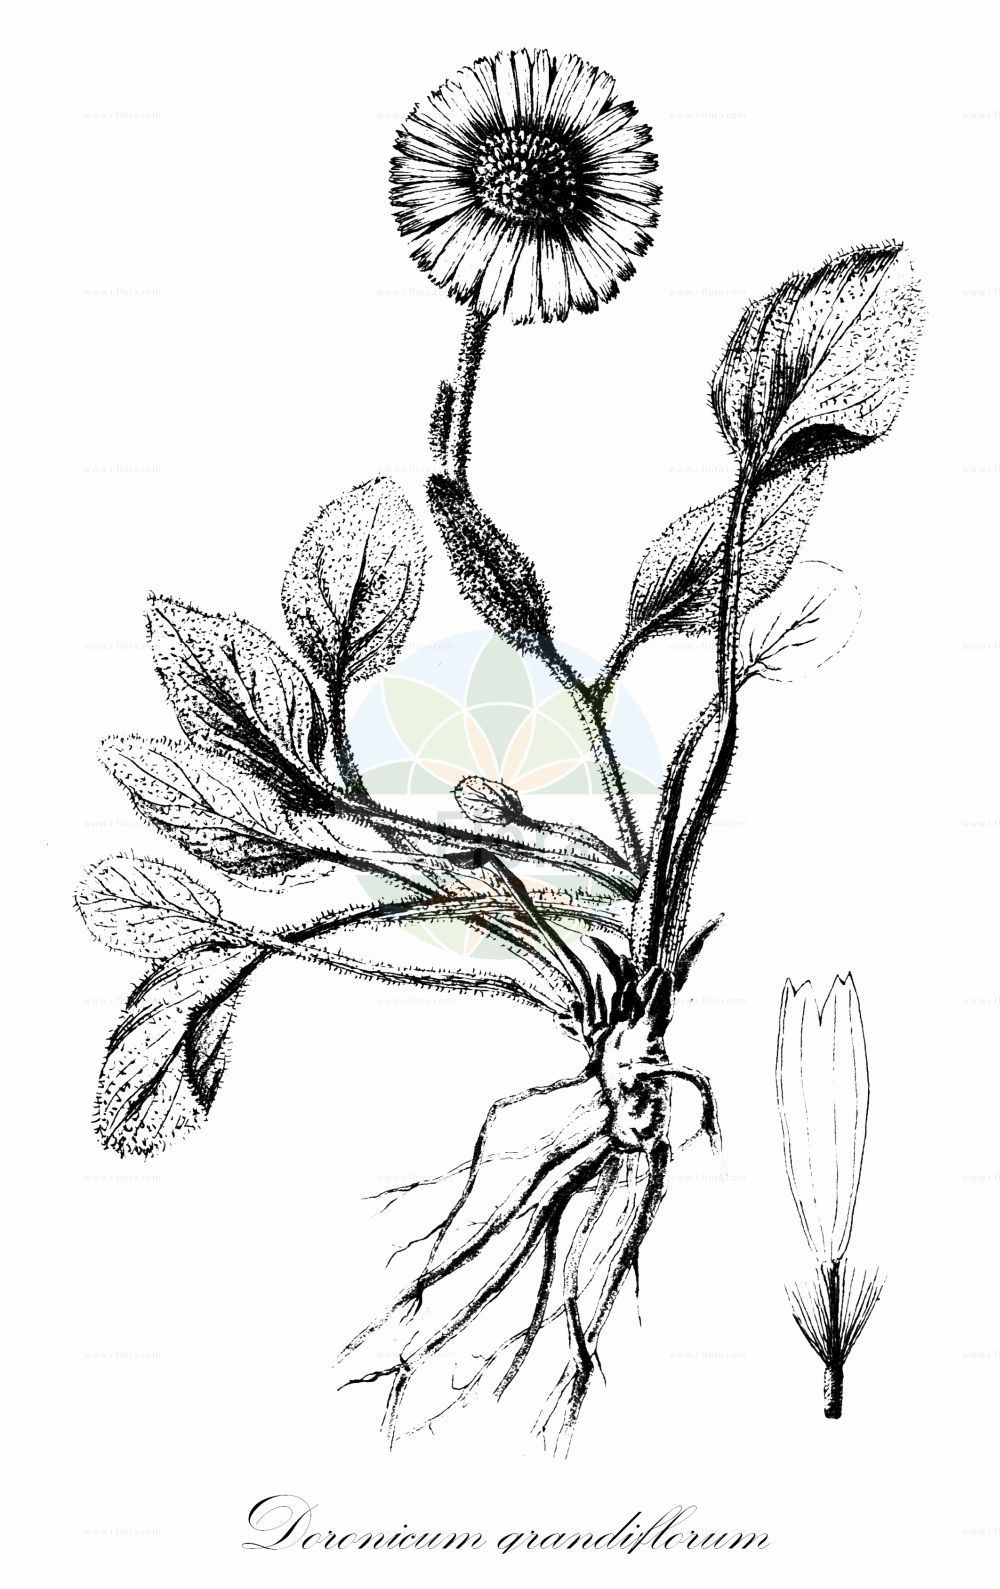 Historische Abbildung von Doronicum grandiflorum (Großblütige Gemswurz - Large-flowered Leopard's-bane). Das Bild zeigt Blatt, Bluete, Frucht und Same. ---- Historical Drawing of Doronicum grandiflorum (Großblütige Gemswurz - Large-flowered Leopard's-bane). The image is showing leaf, flower, fruit and seed.(Doronicum grandiflorum,Großblütige Gemswurz,Large-flowered Leopard's-bane,Aronicum scorpioides,Aronicum viscosum,Doronicum grandiflorum,Doronicum halleri,Doronicum portae,Doronicum pyrenaicum,Doronicum scorpioides,Doronicum viscosum,Grossbluetige Gemswurz,Grosskoepfige Gaemswurz,Grosskorb-Gaemswurz,Large-flowered Leopard's-bane,Large-flowered Leopardsbane,Doronicum,Gemswurz,False Leopard's-bane,Asteraceae,Korbblütengewächse,Daisy family,Blatt,Bluete,Frucht,Same,leaf,flower,fruit,seed,Bulletin de la Société botanique de France (1881))